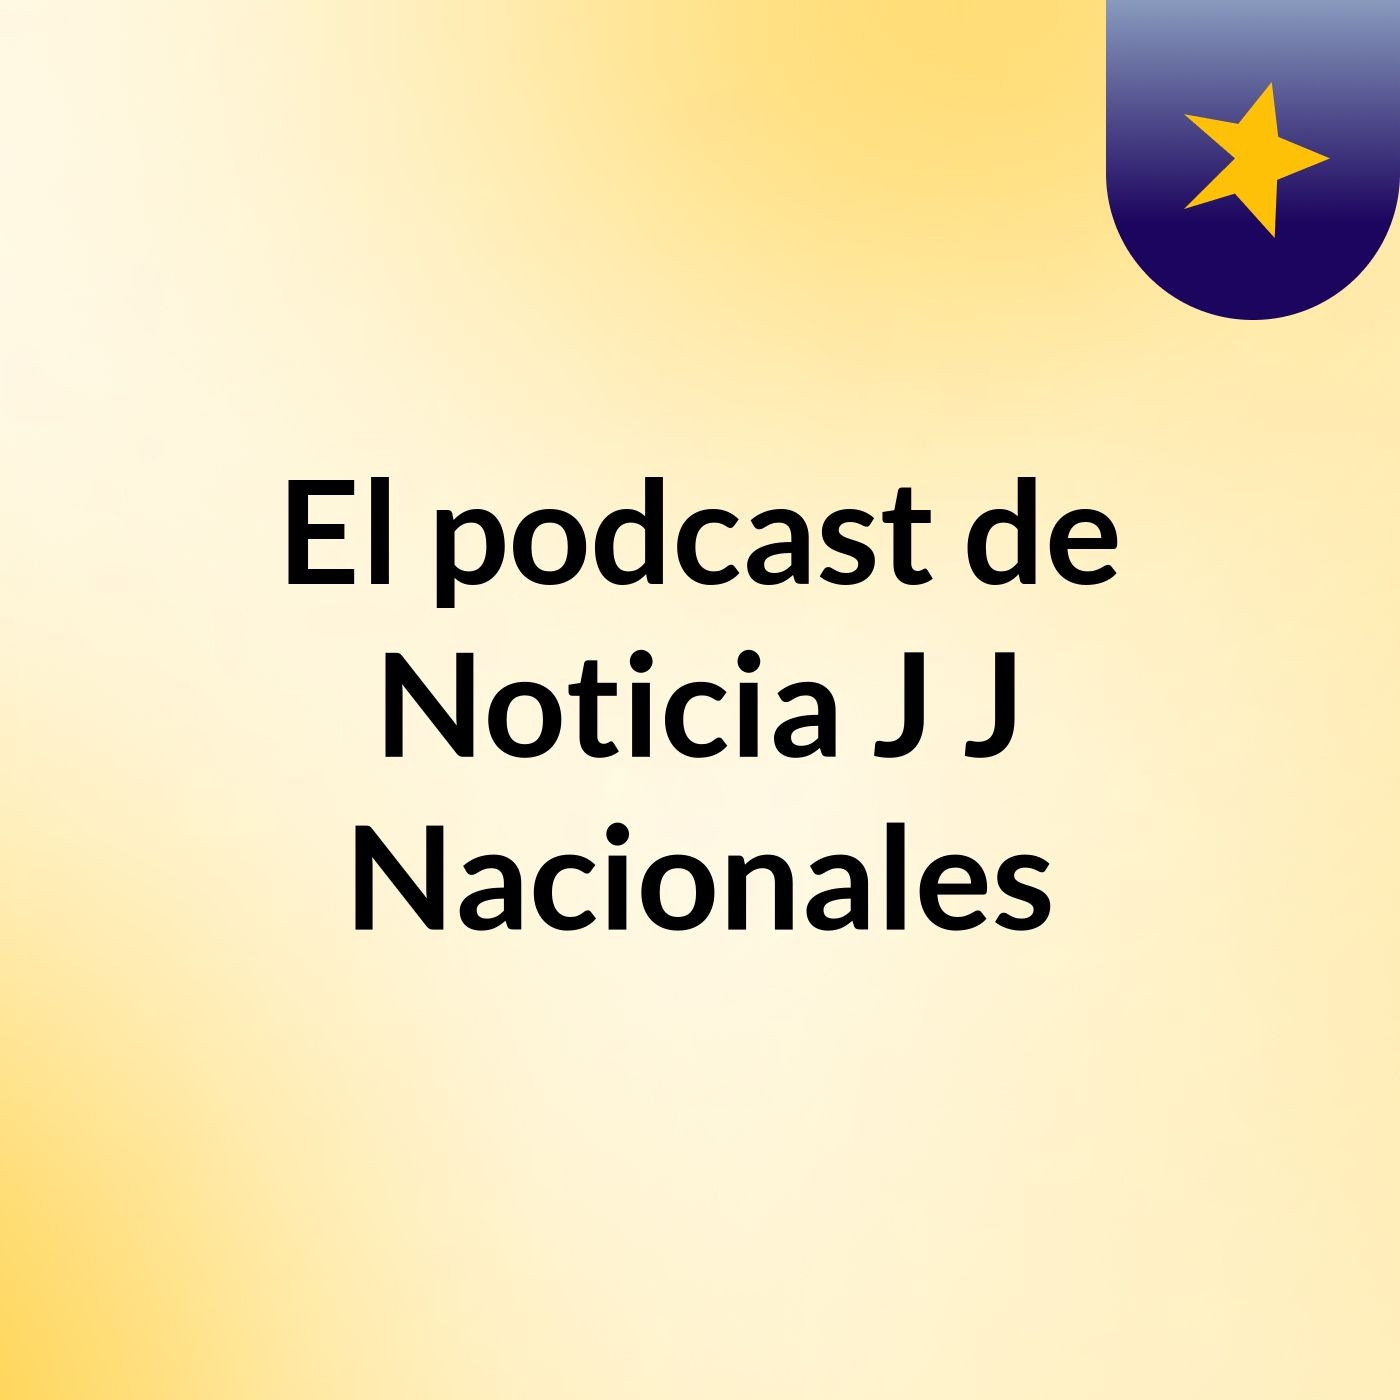 Episodio 3 - El podcast de Noticia J J Nacionales